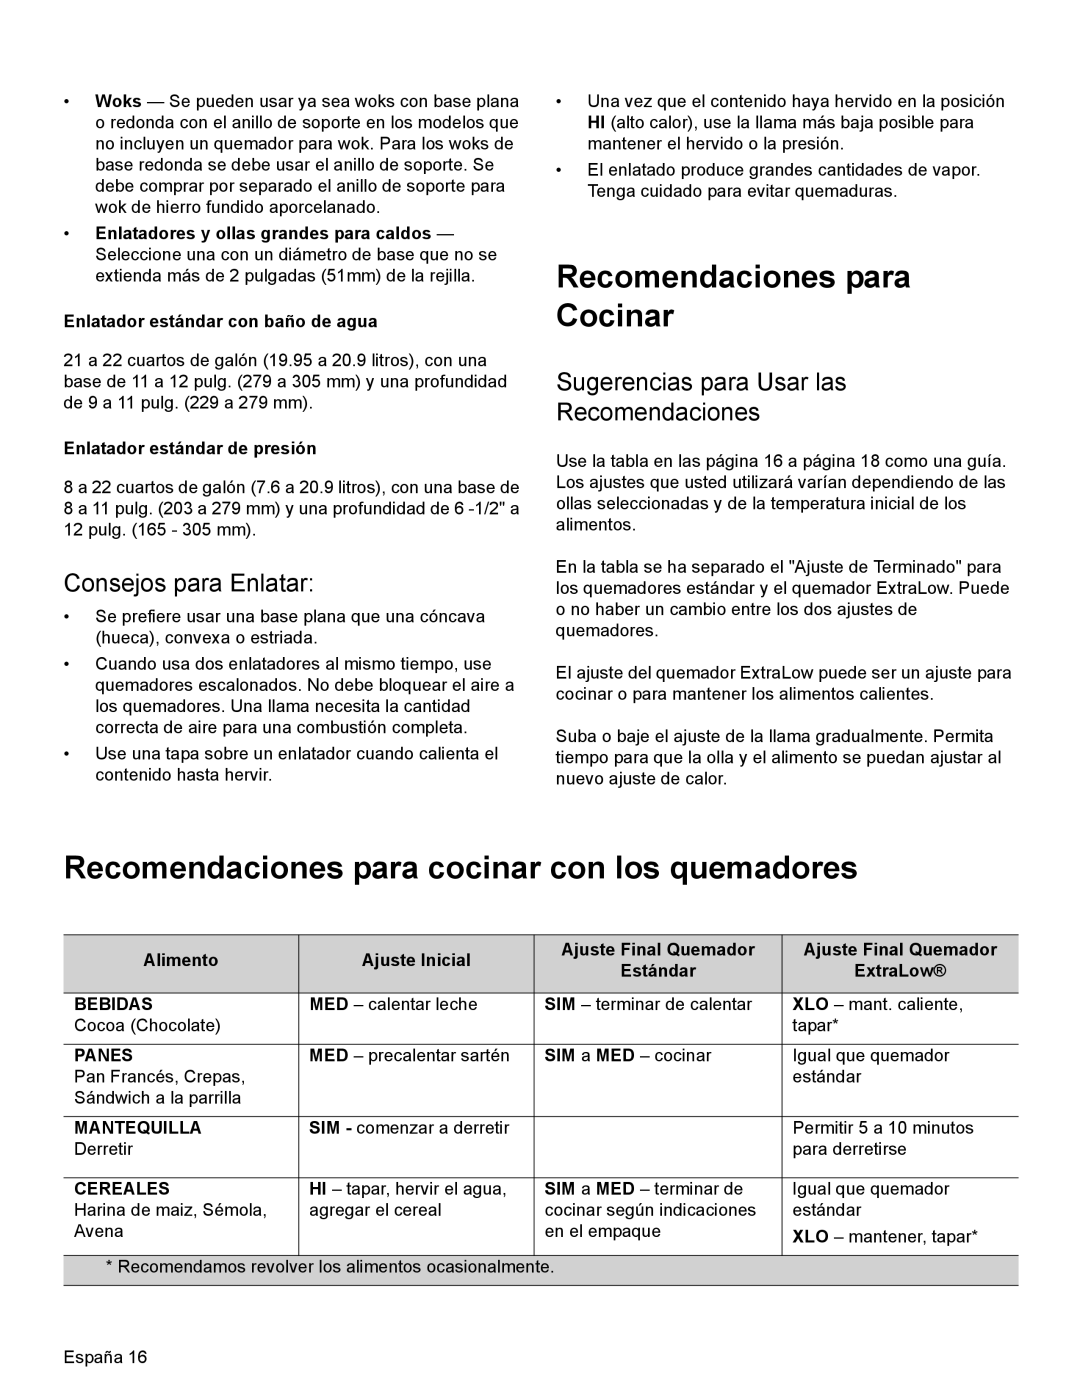 Thermador PRG30 manual Recomendaciones para Cocinar, Recomendaciones para cocinar con los quemadores, Consejos para Enlatar 